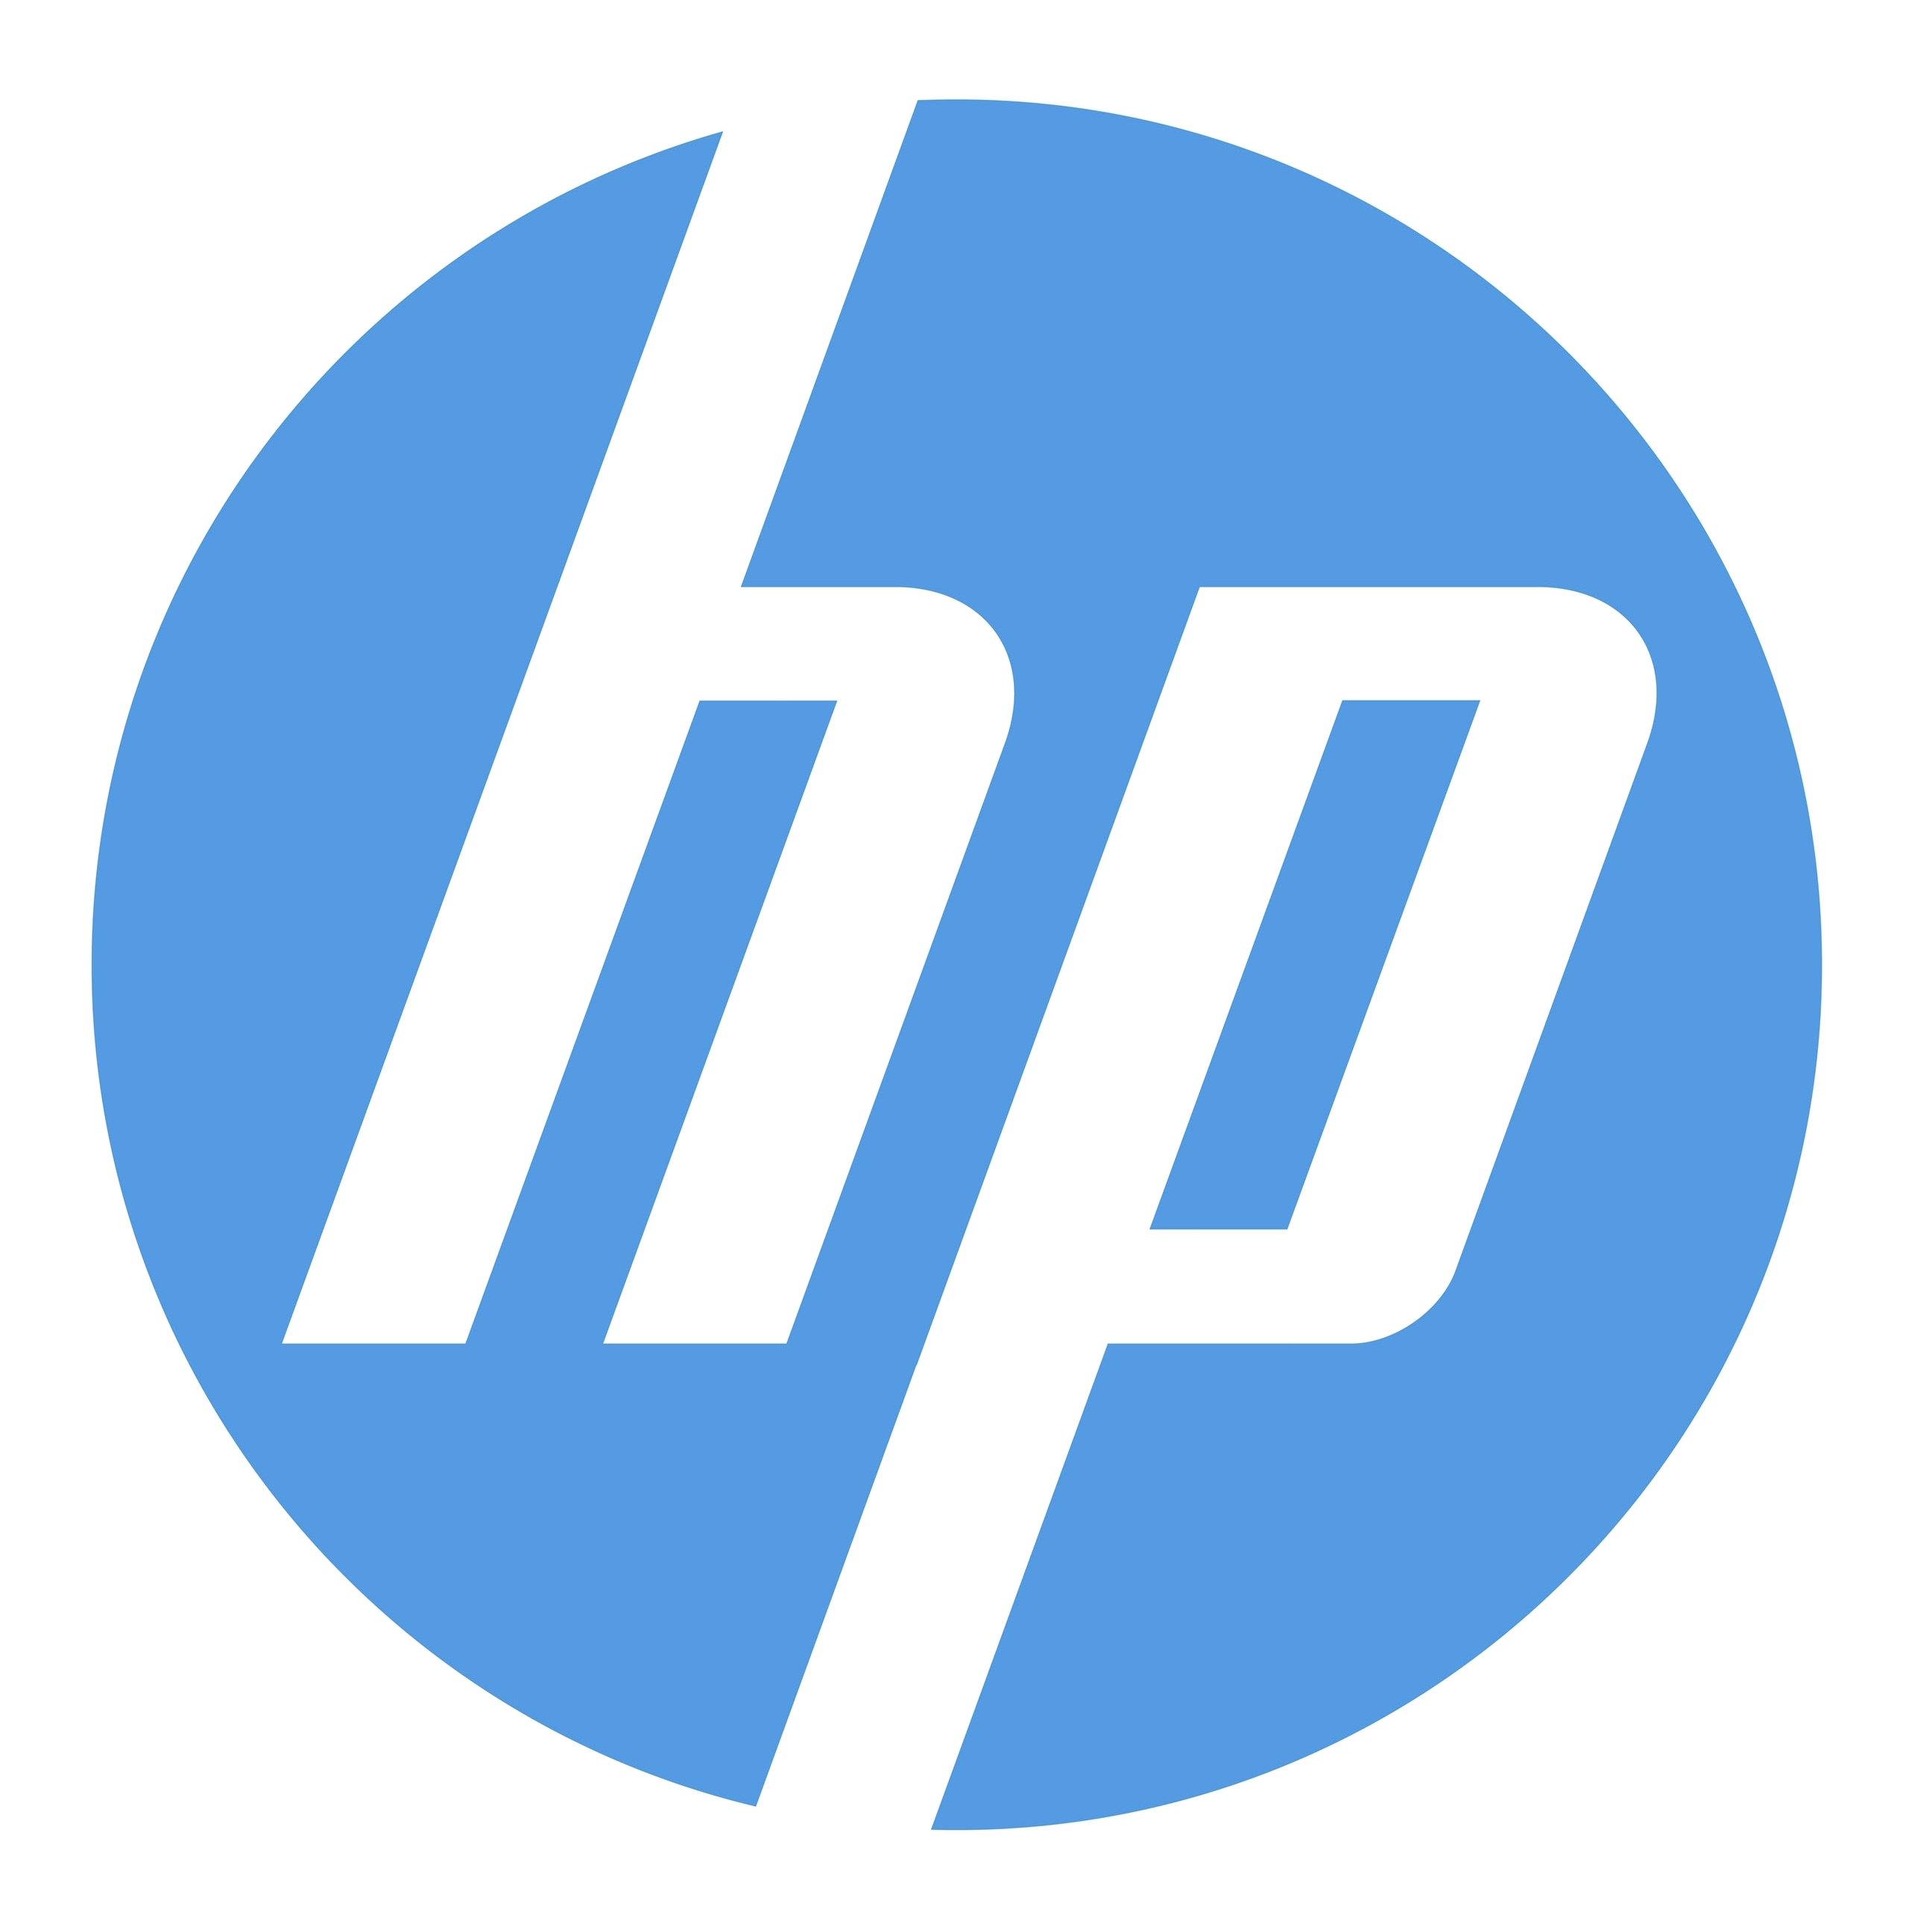 Imagem PNG do logotipo da HP - PurePNG | Biblioteca de imagens PNG CC0 transparente gratuita